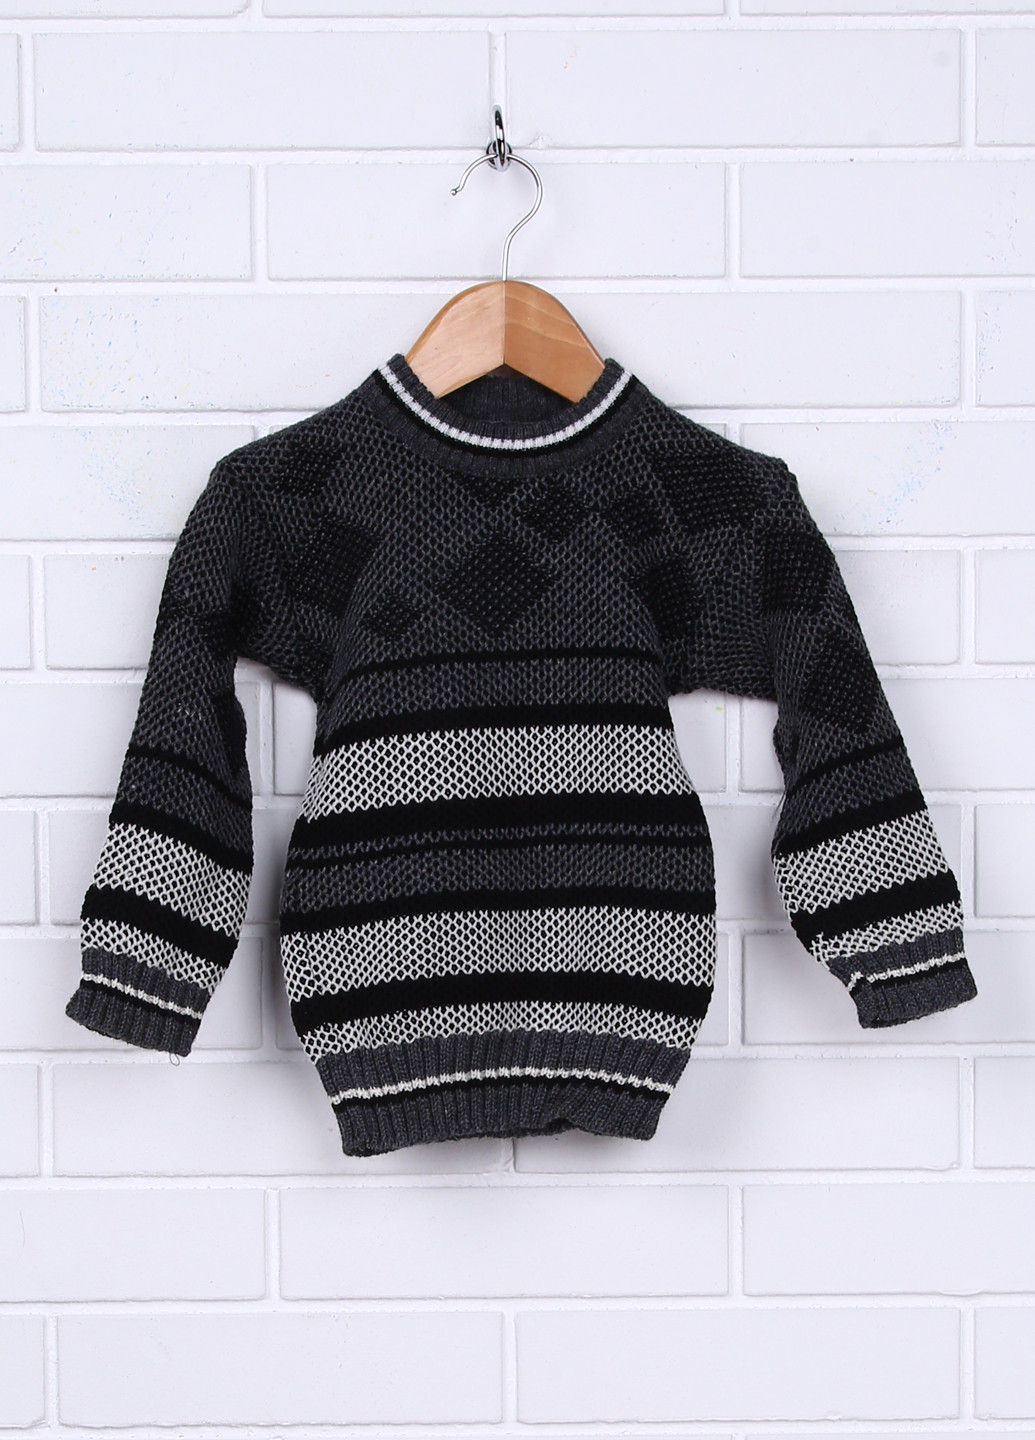 Грифельно-серый демисезонный свитер джемпер Trikotex